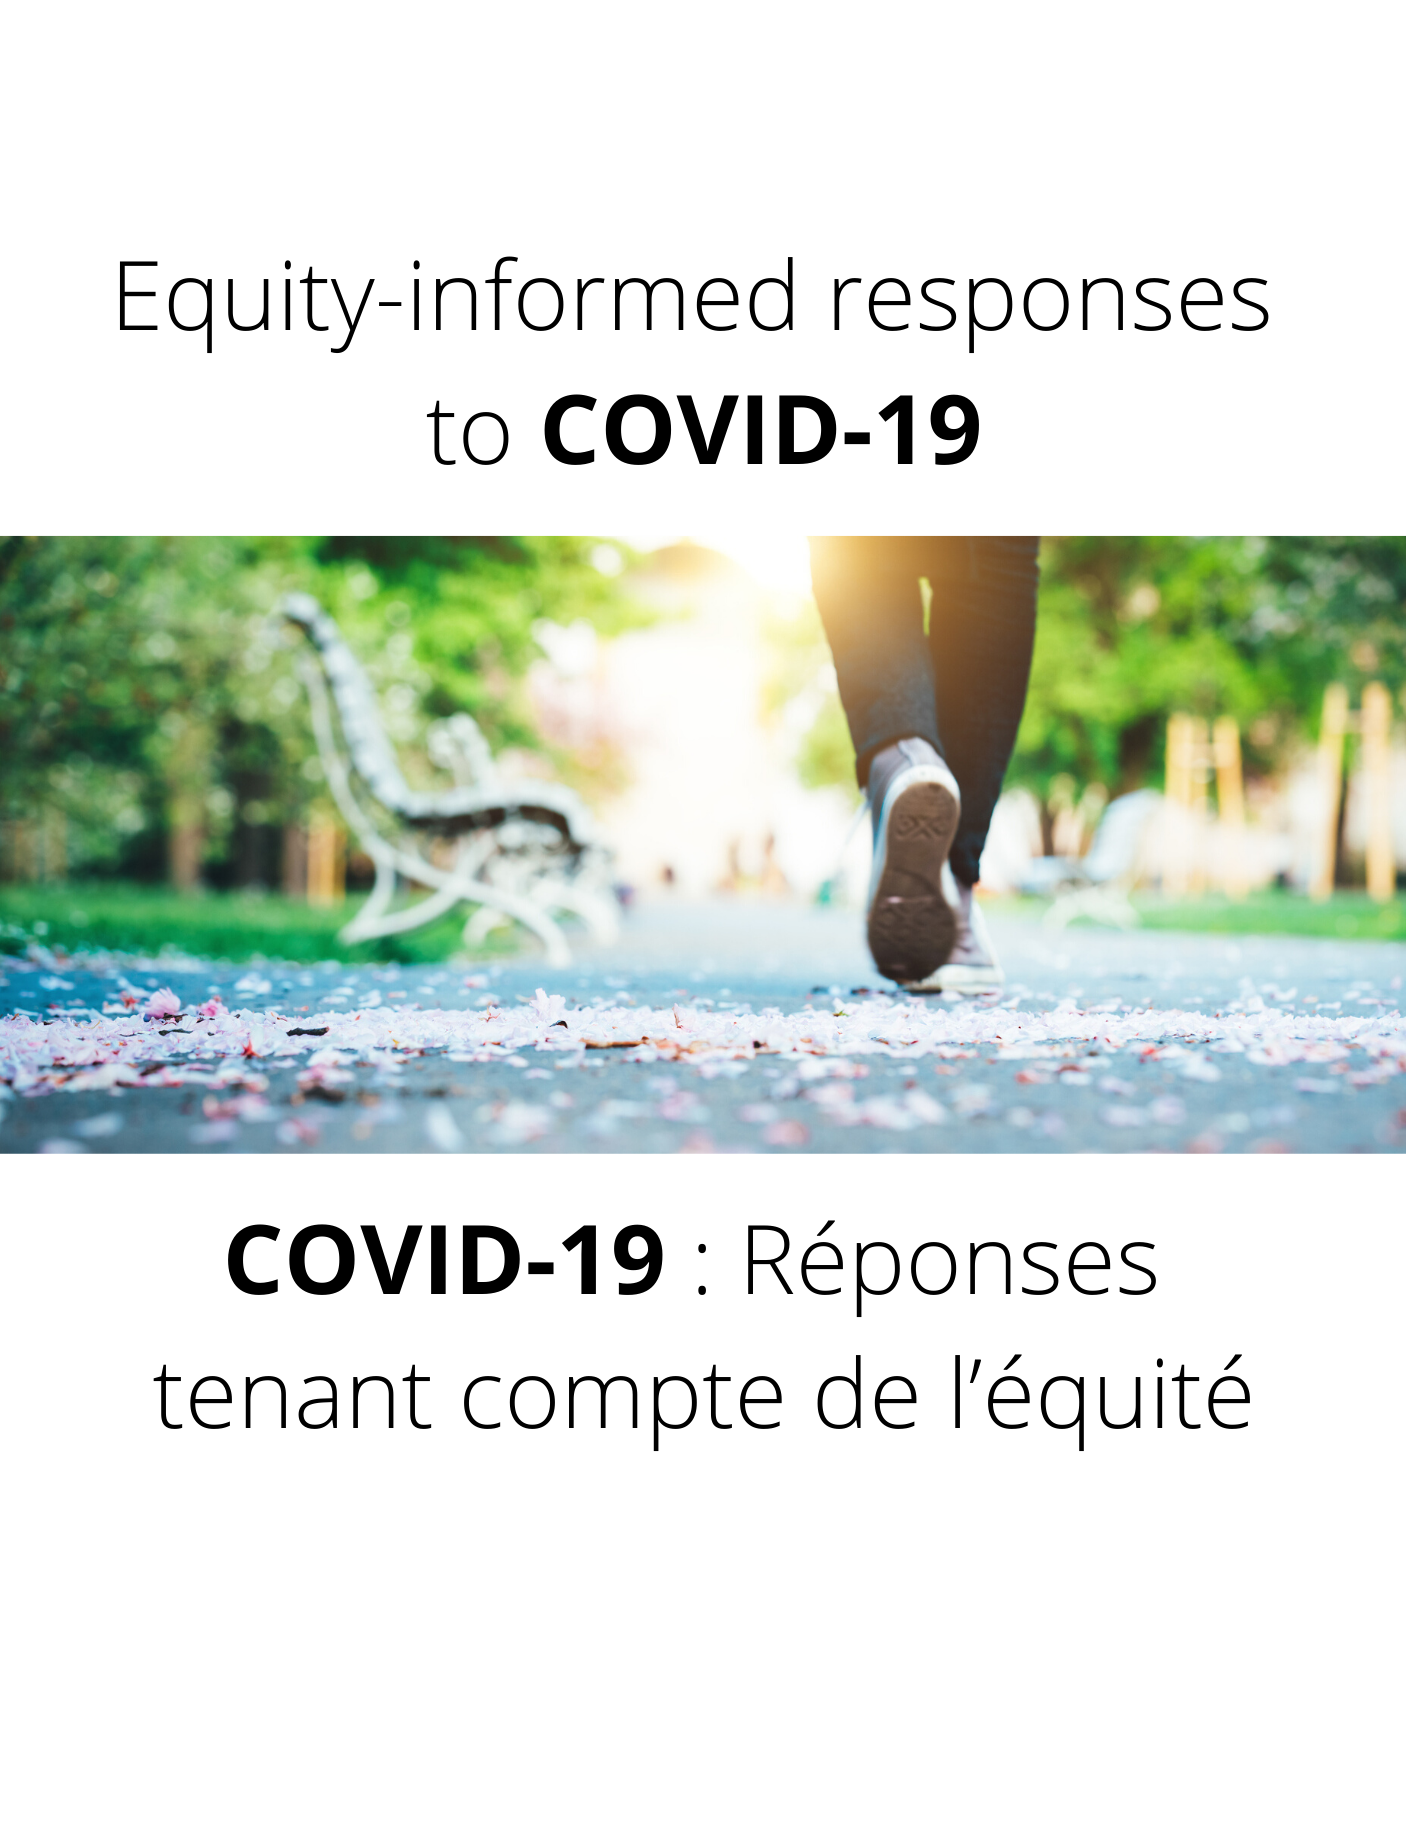 Les enfants et les écoles pendant la COVID-19 et au-delà : interactions et connexion en saisissant les opportunités